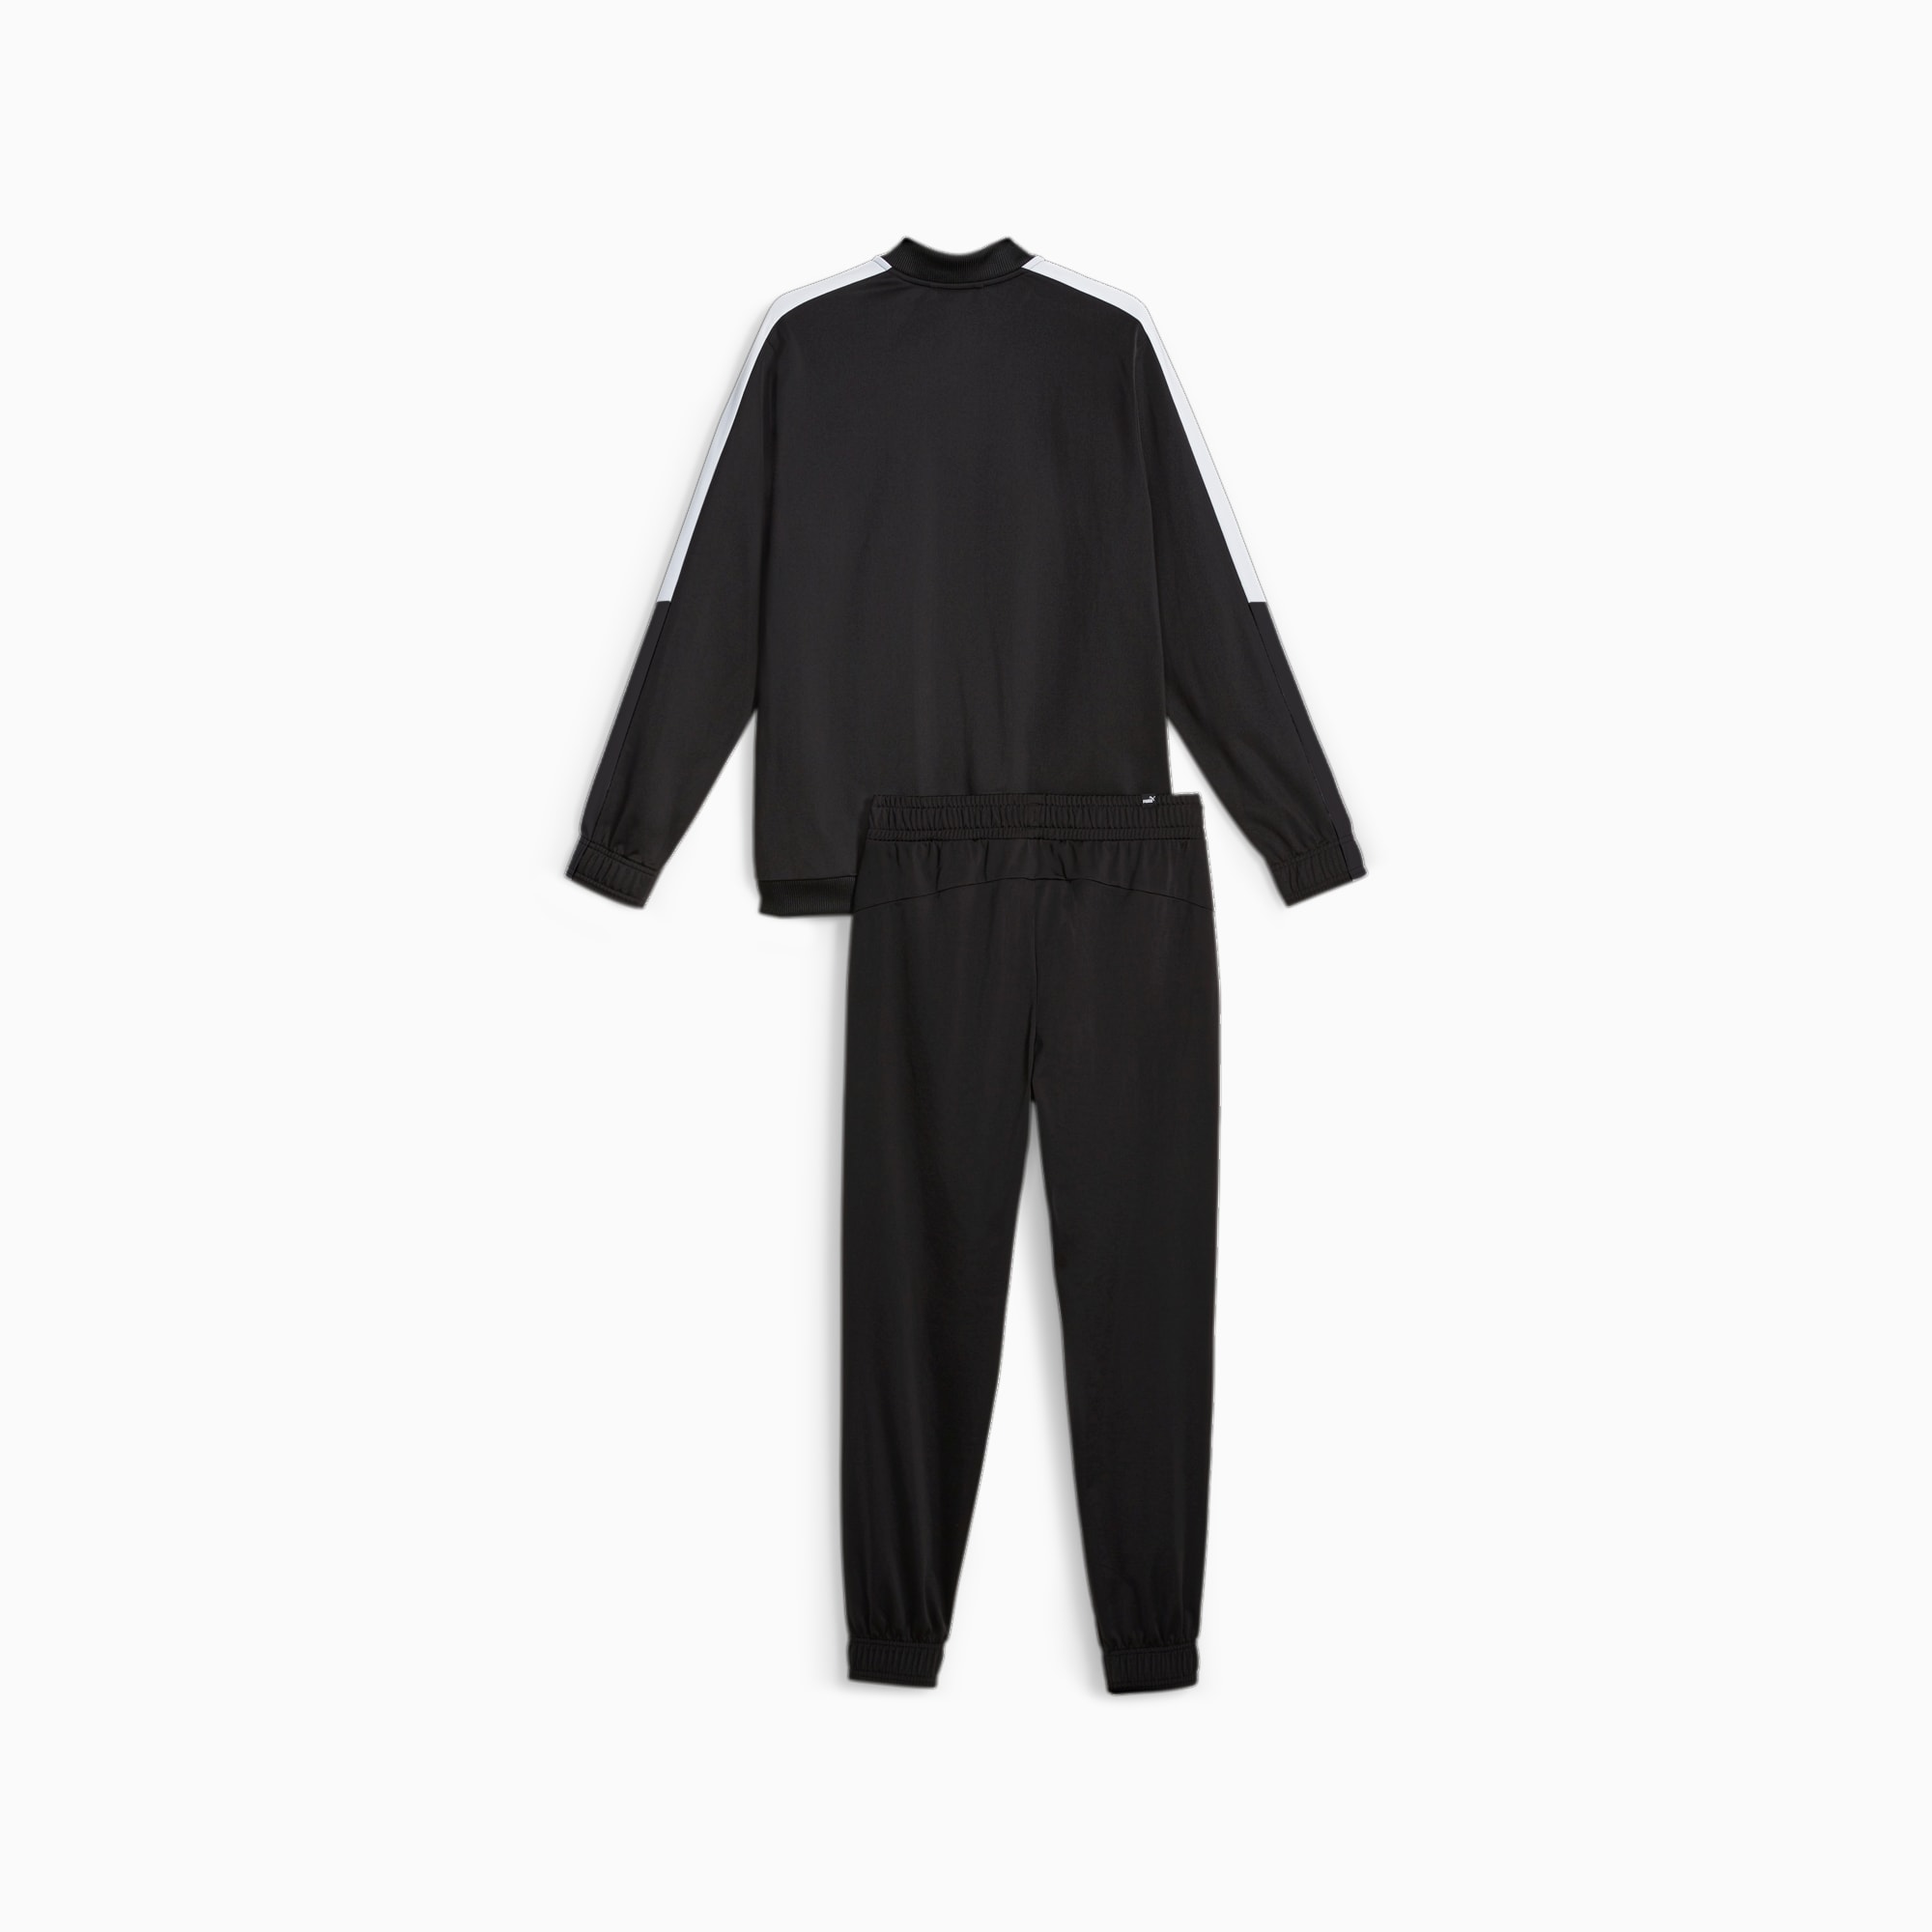 PUMA Men's Baseball Tricot Suit, Black, Size XL